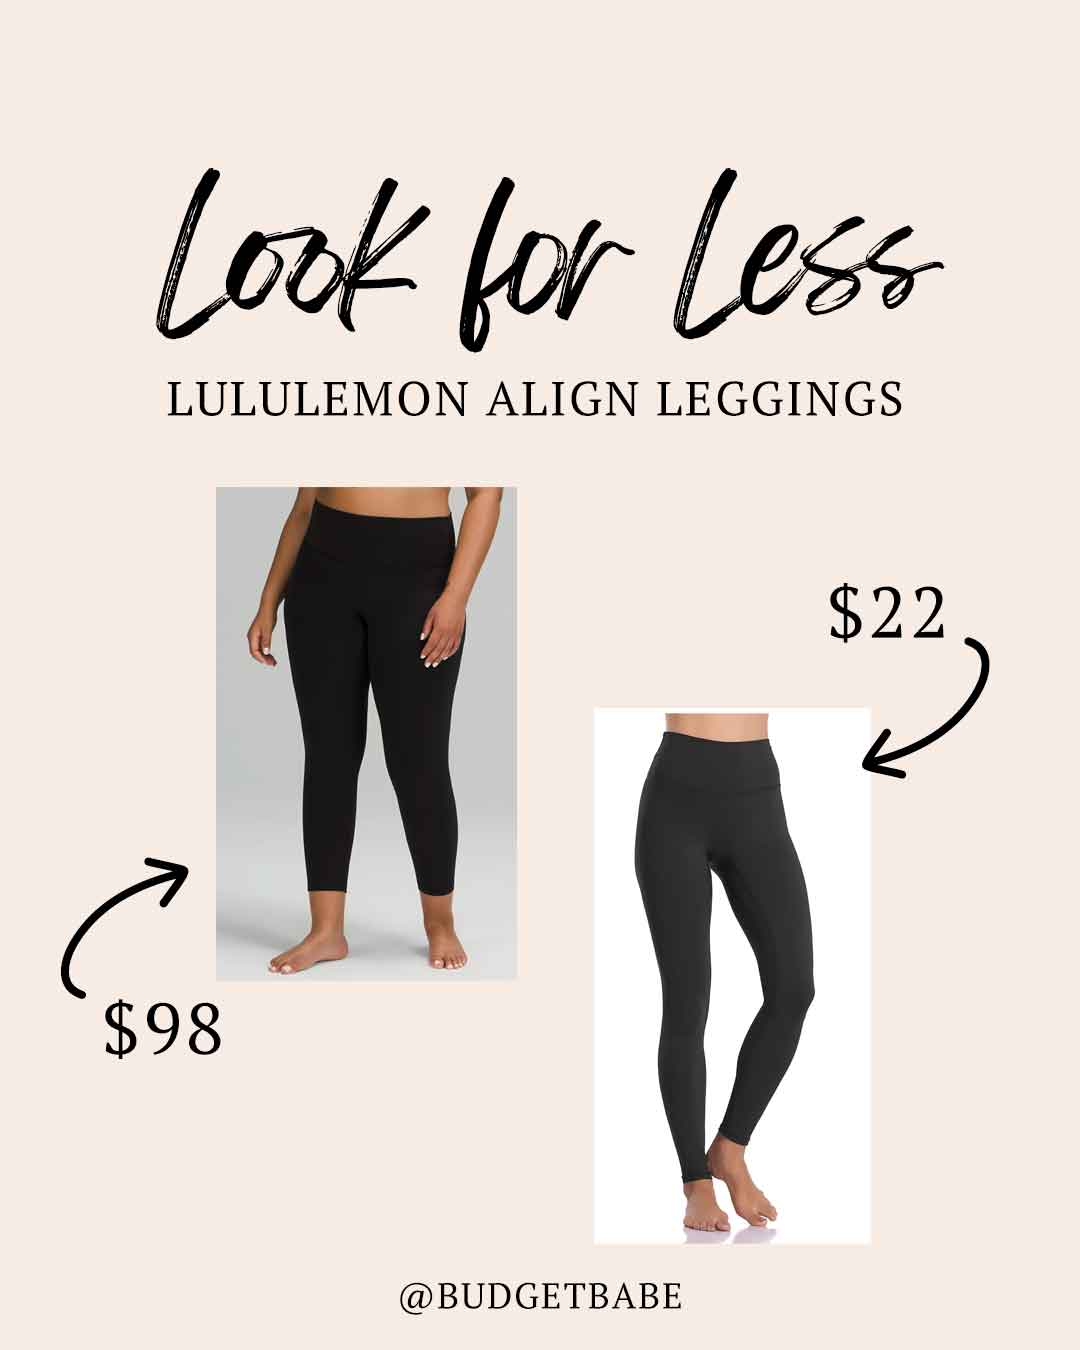 Lululemon Align leggings look for less on Amazon